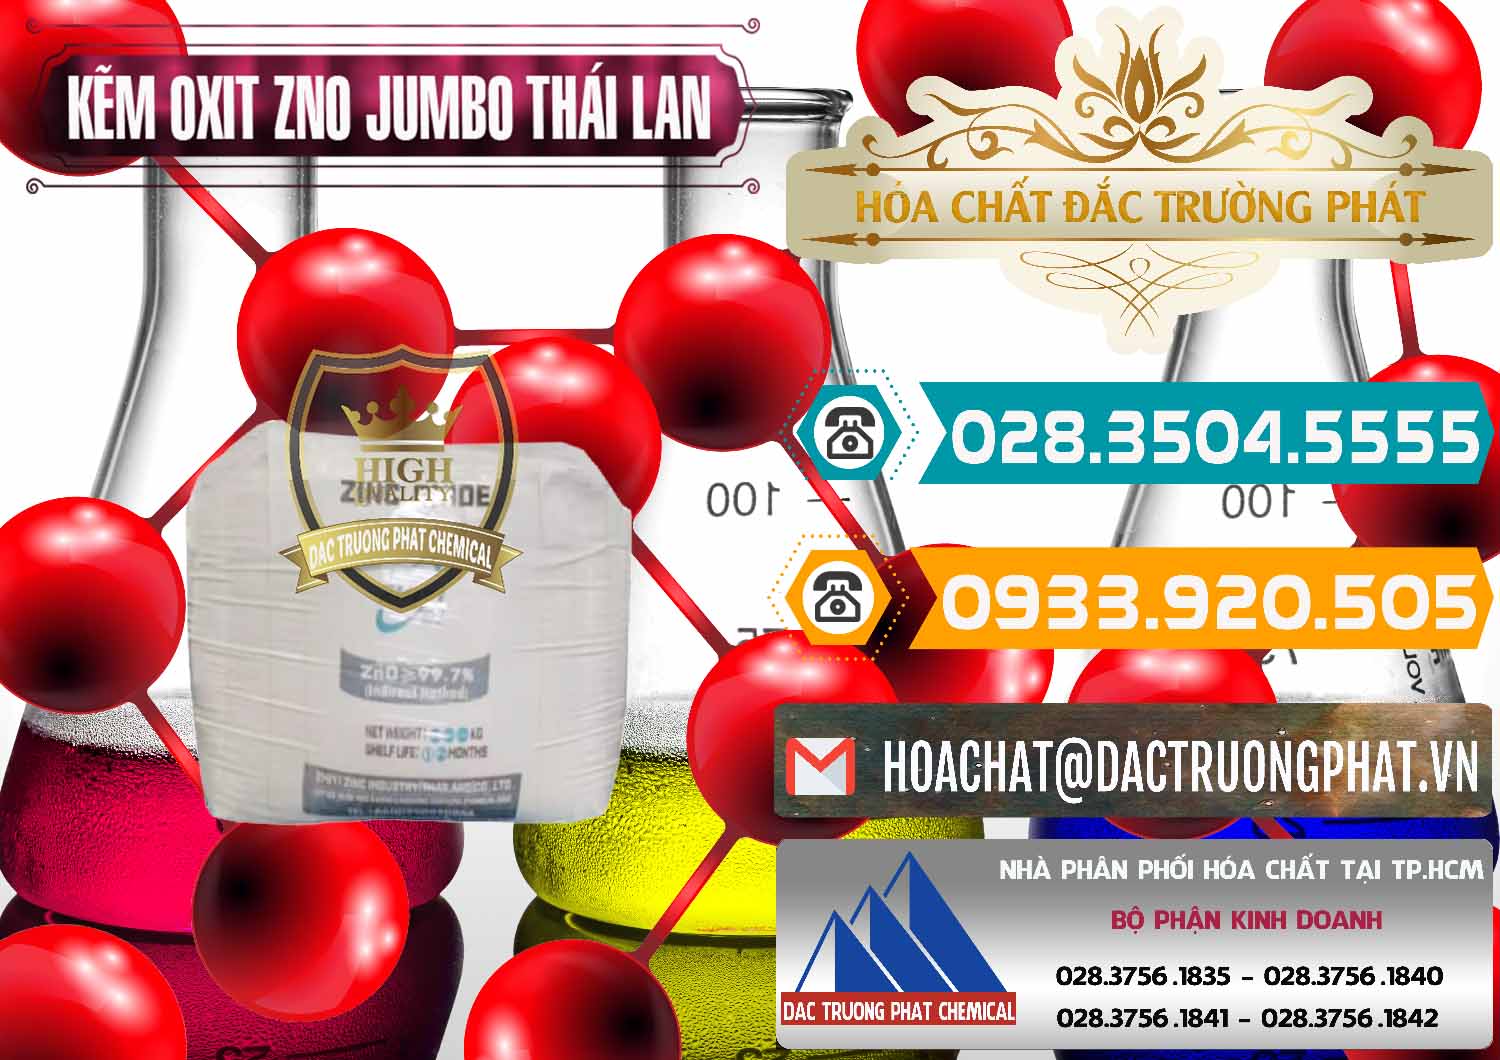 Nơi bán và cung cấp Zinc Oxide - Bột Kẽm Oxit ZNO Jumbo Bành Thái Lan Thailand - 0370 - Nhà phân phối & cung cấp hóa chất tại TP.HCM - congtyhoachat.vn